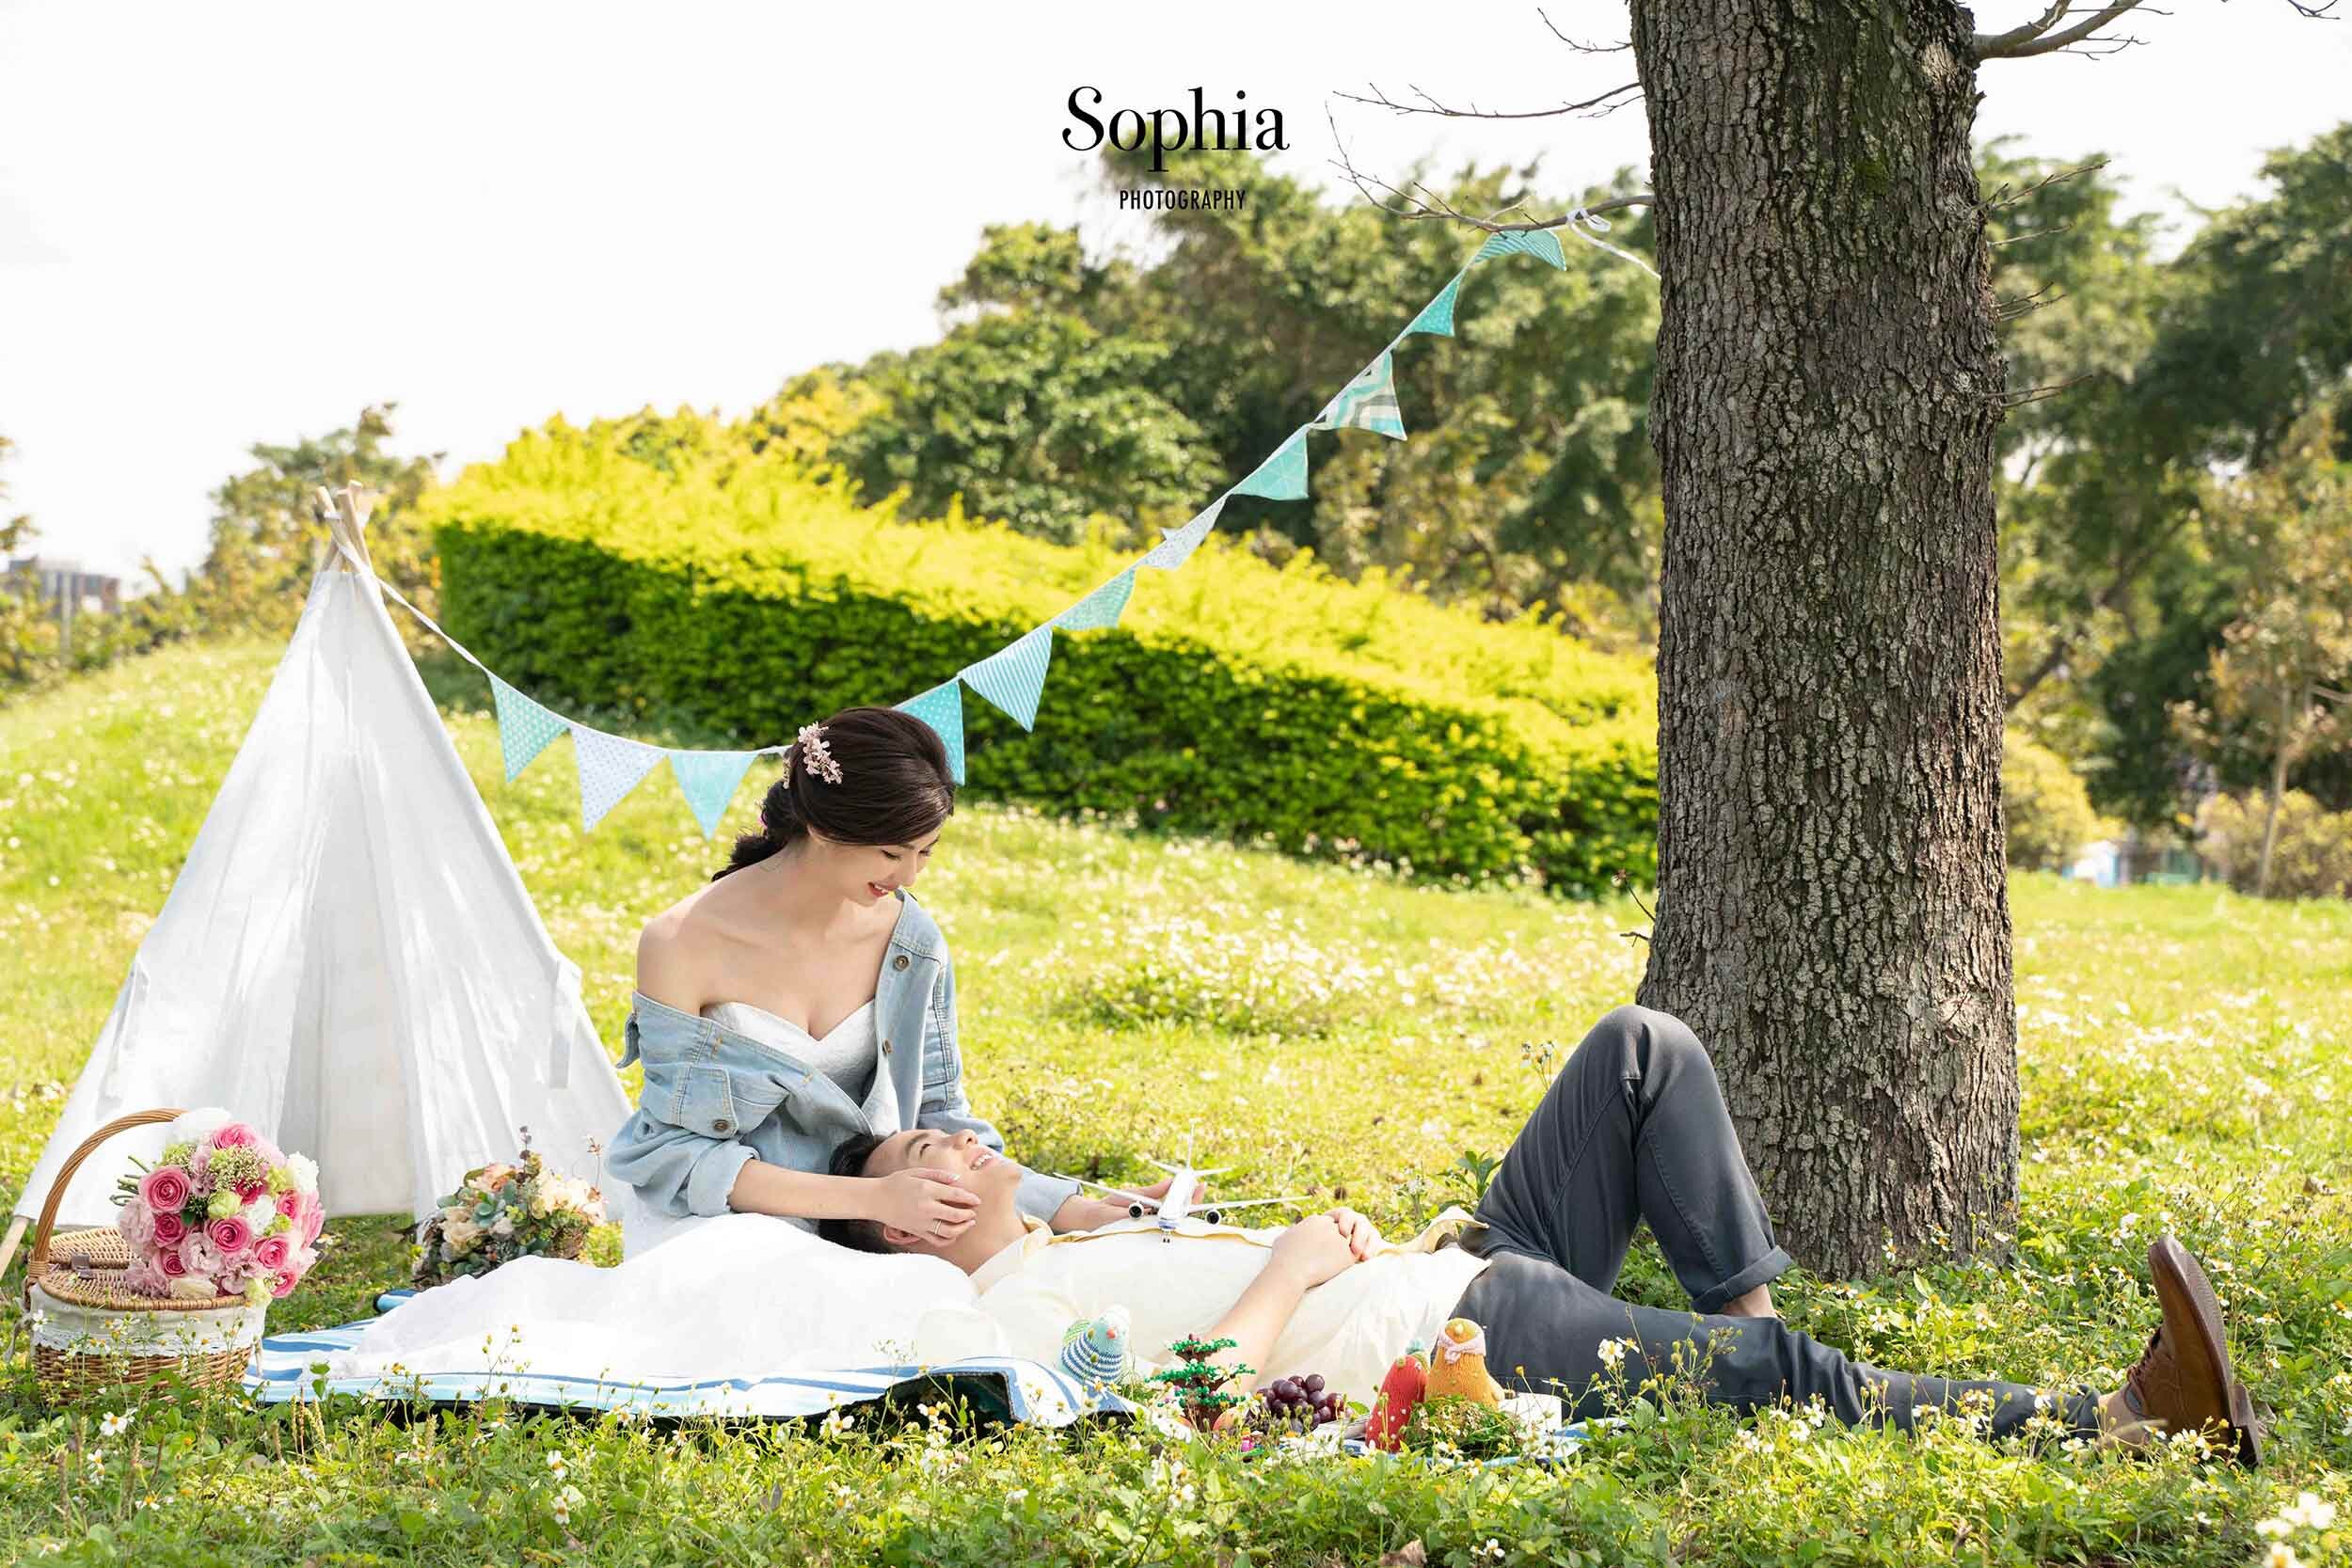  蘇菲雅婚紗-野餐風-外景婚紗照 